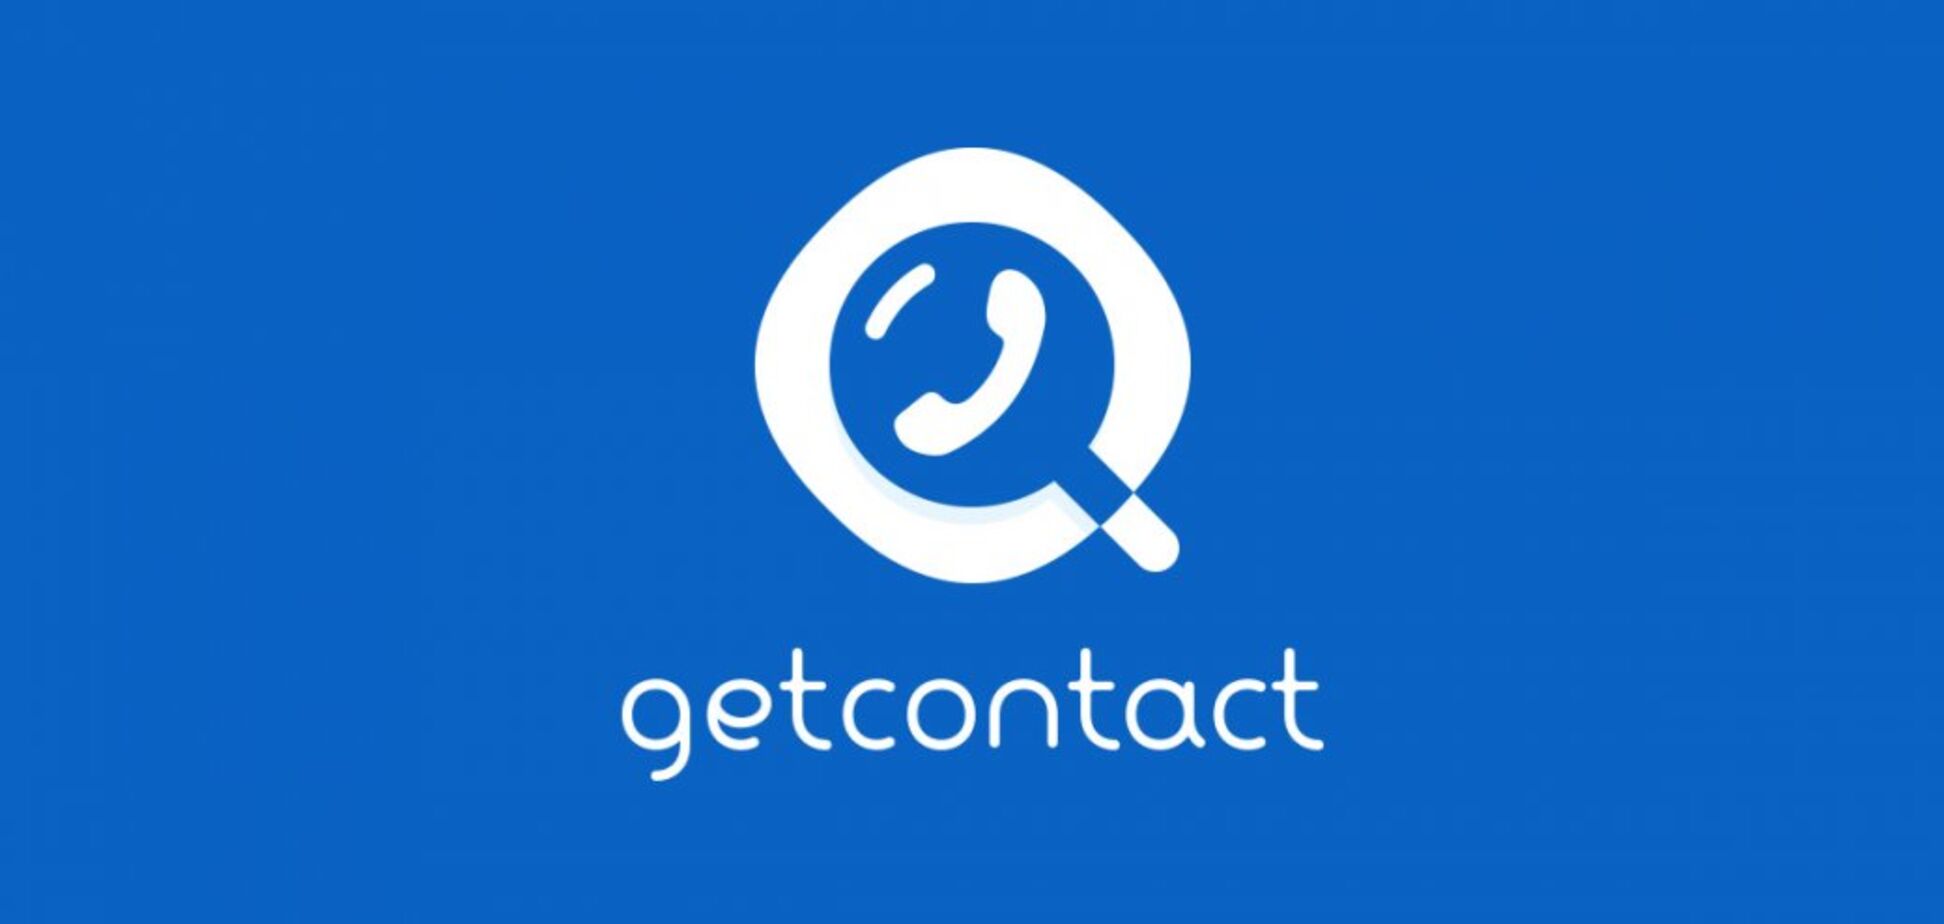 Що таке Get Contact і чому навколо нього галас: головне